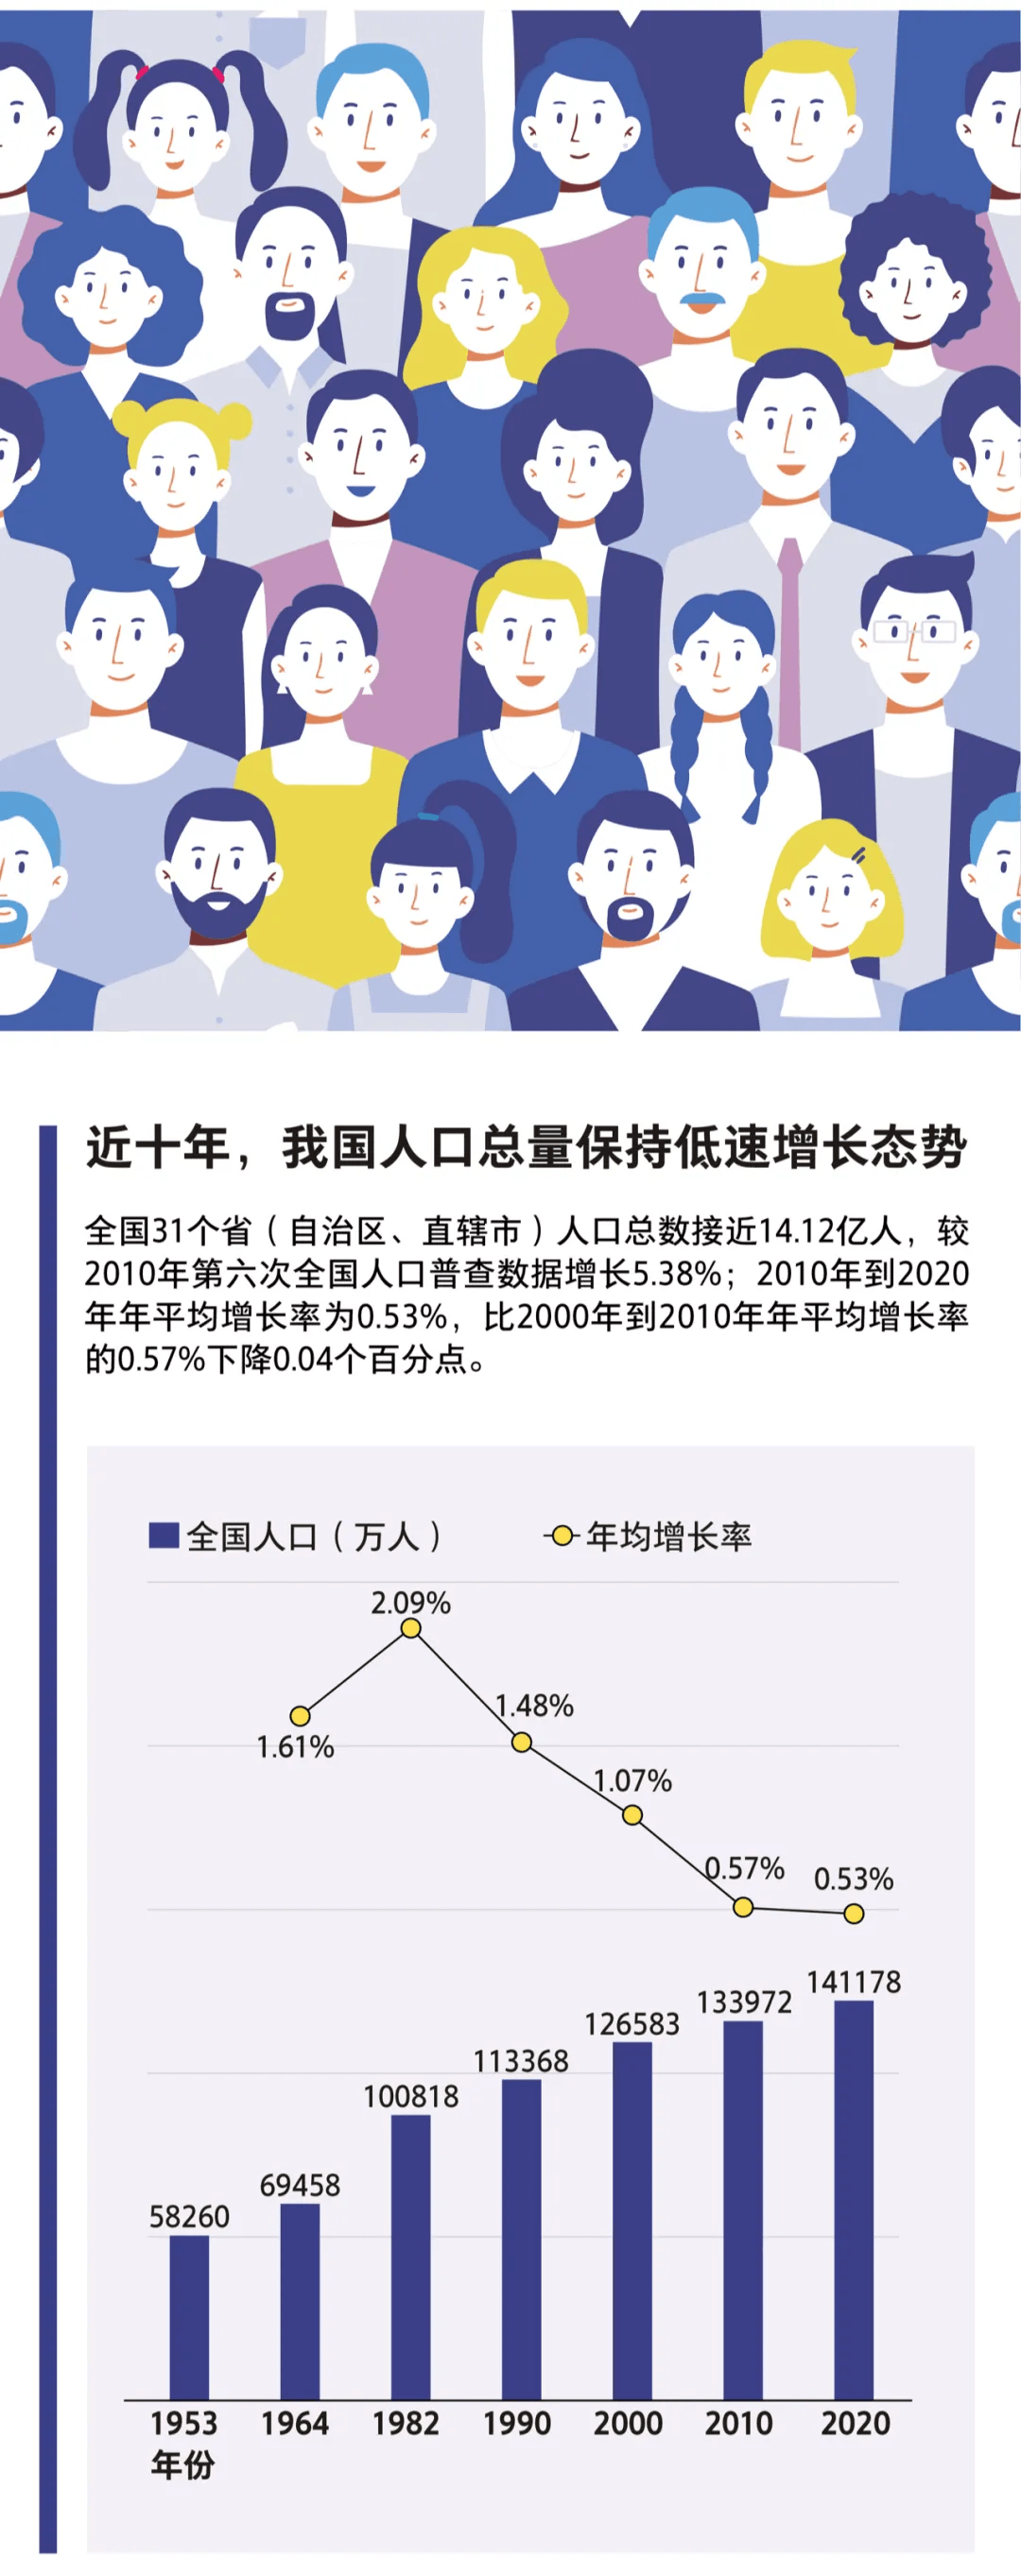 一图读懂中国人口现状:这10个数据值得特别关注